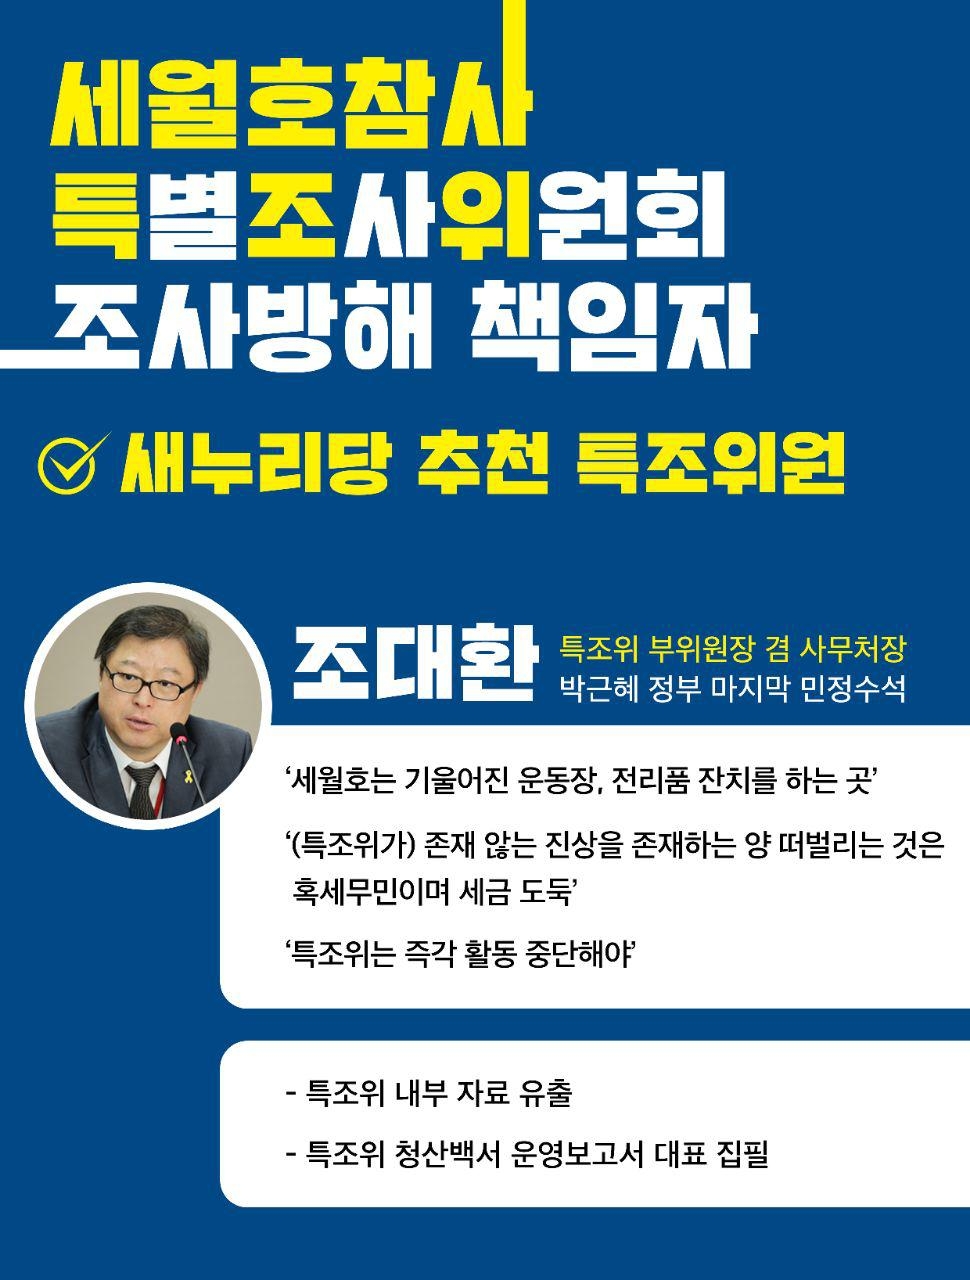 세월호단체에서 29일 발표한 특조위 조사방해 책임자 명단에 포함된 조대환 당시 부위원장